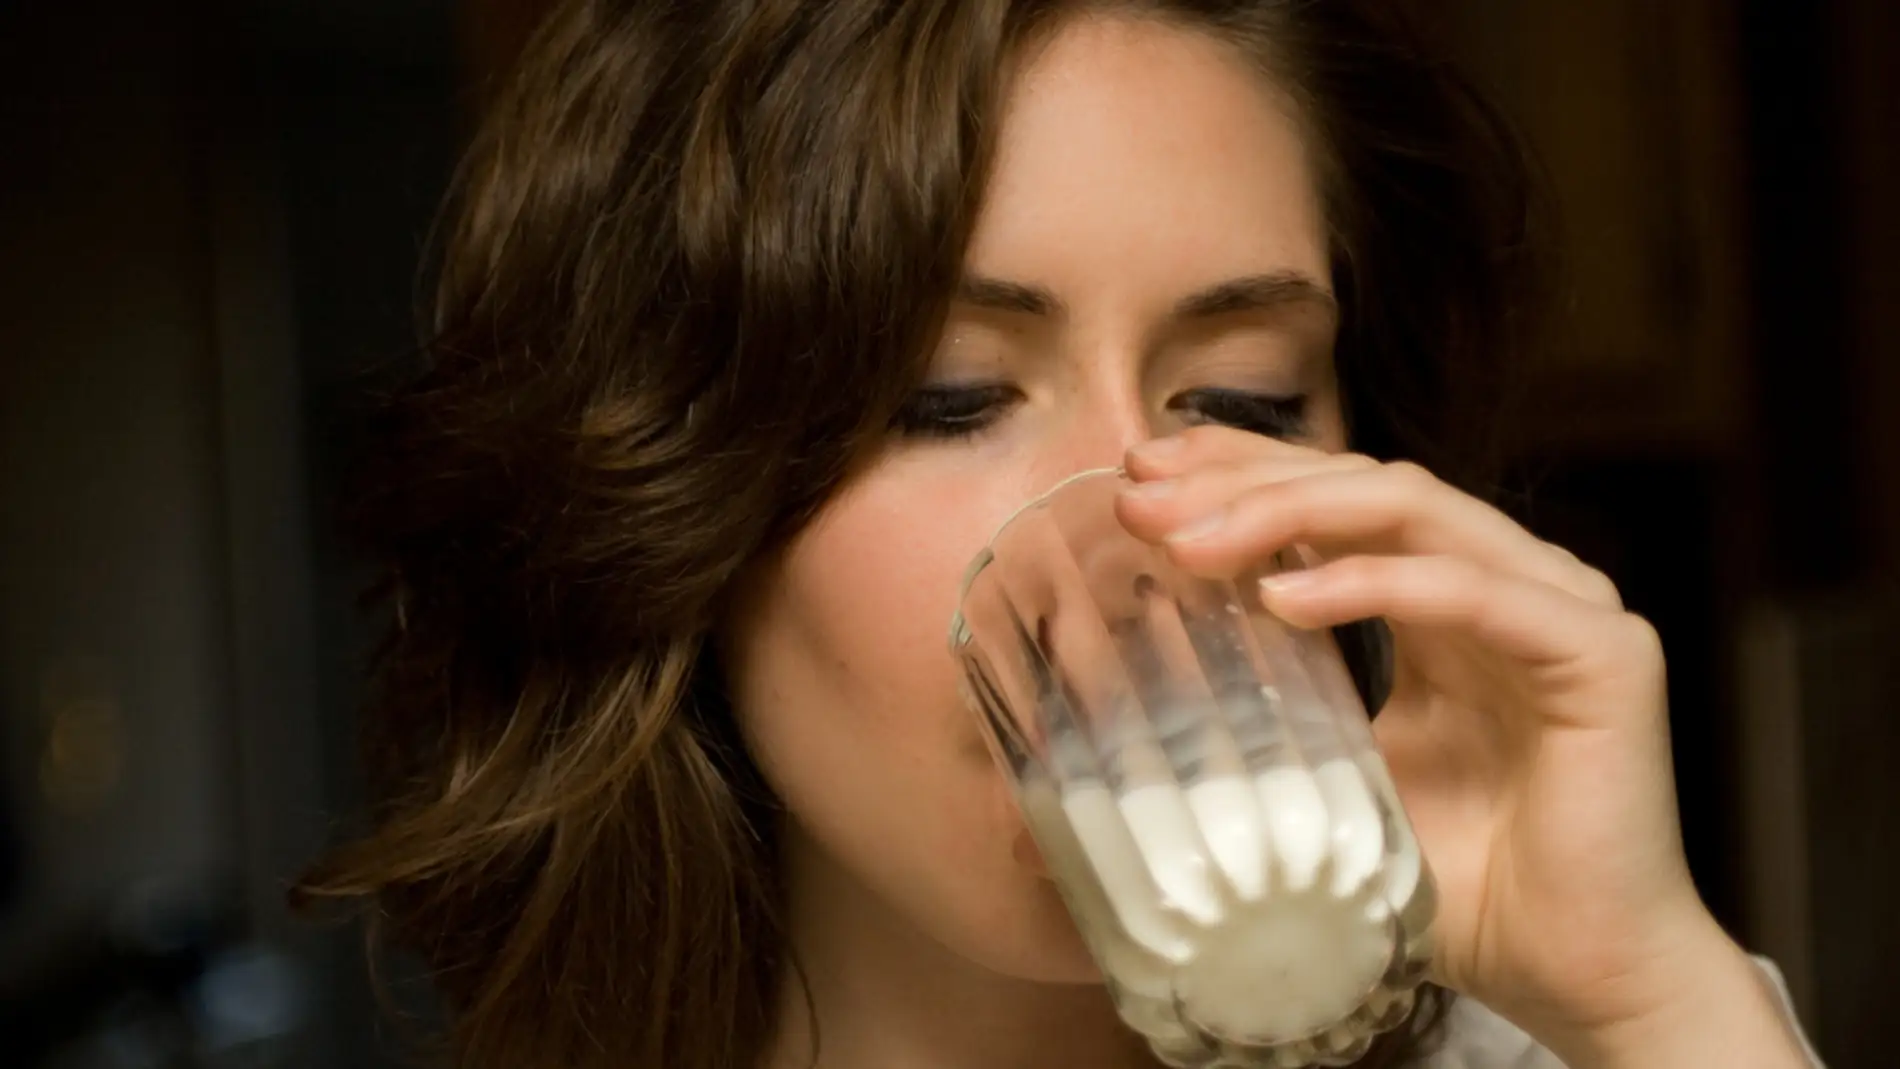 Ahora resulta que lo de beber leche para aprovechar el calcio tampoco es la panacea.